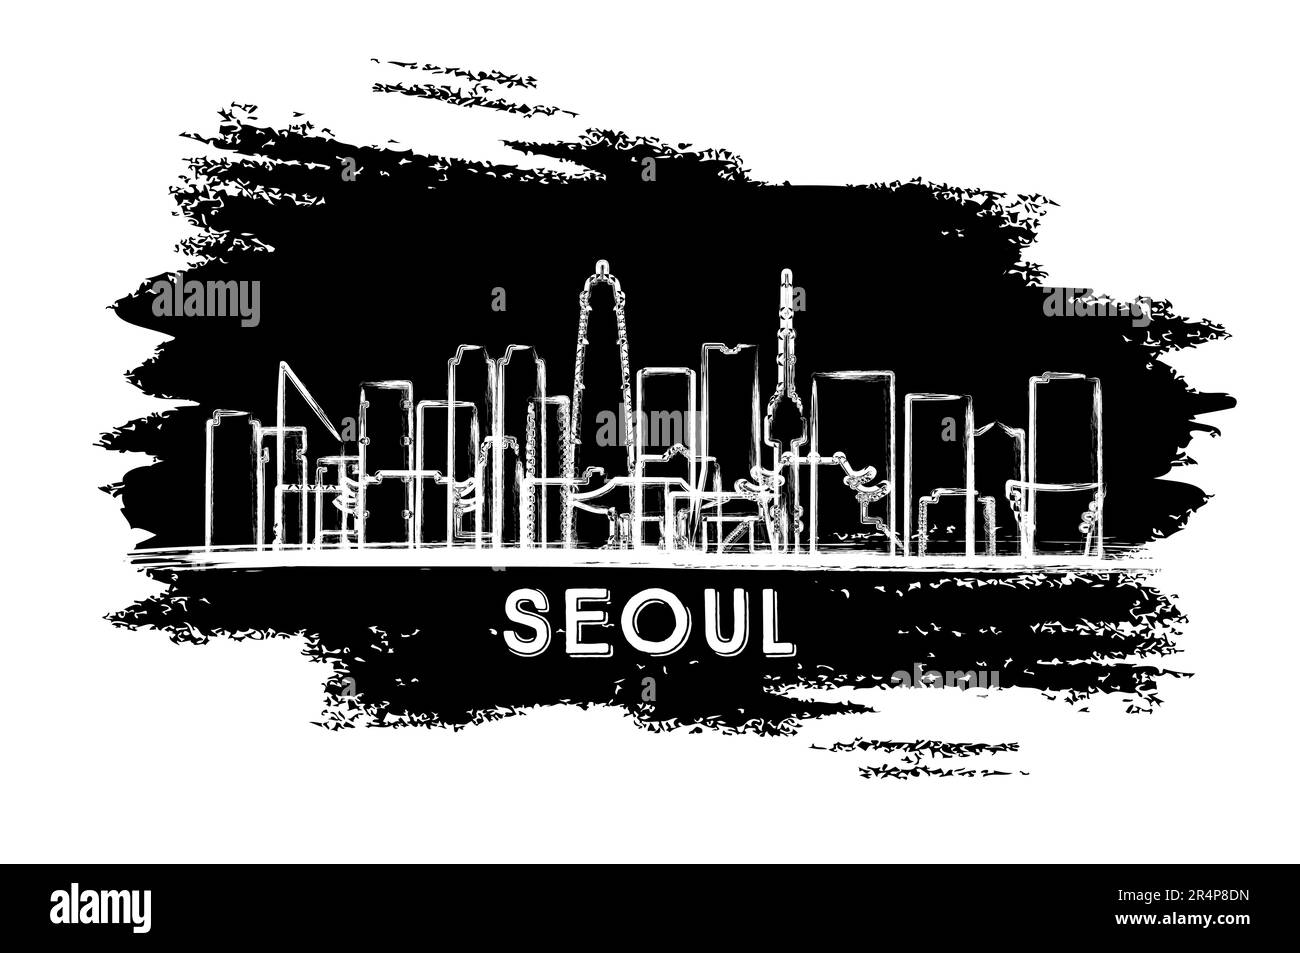 Seoul South Korea City Skyline Silhouette. Esquisse dessinée à la main. Voyages d'affaires et tourisme concept avec architecture moderne. Illustration vectorielle. Illustration de Vecteur